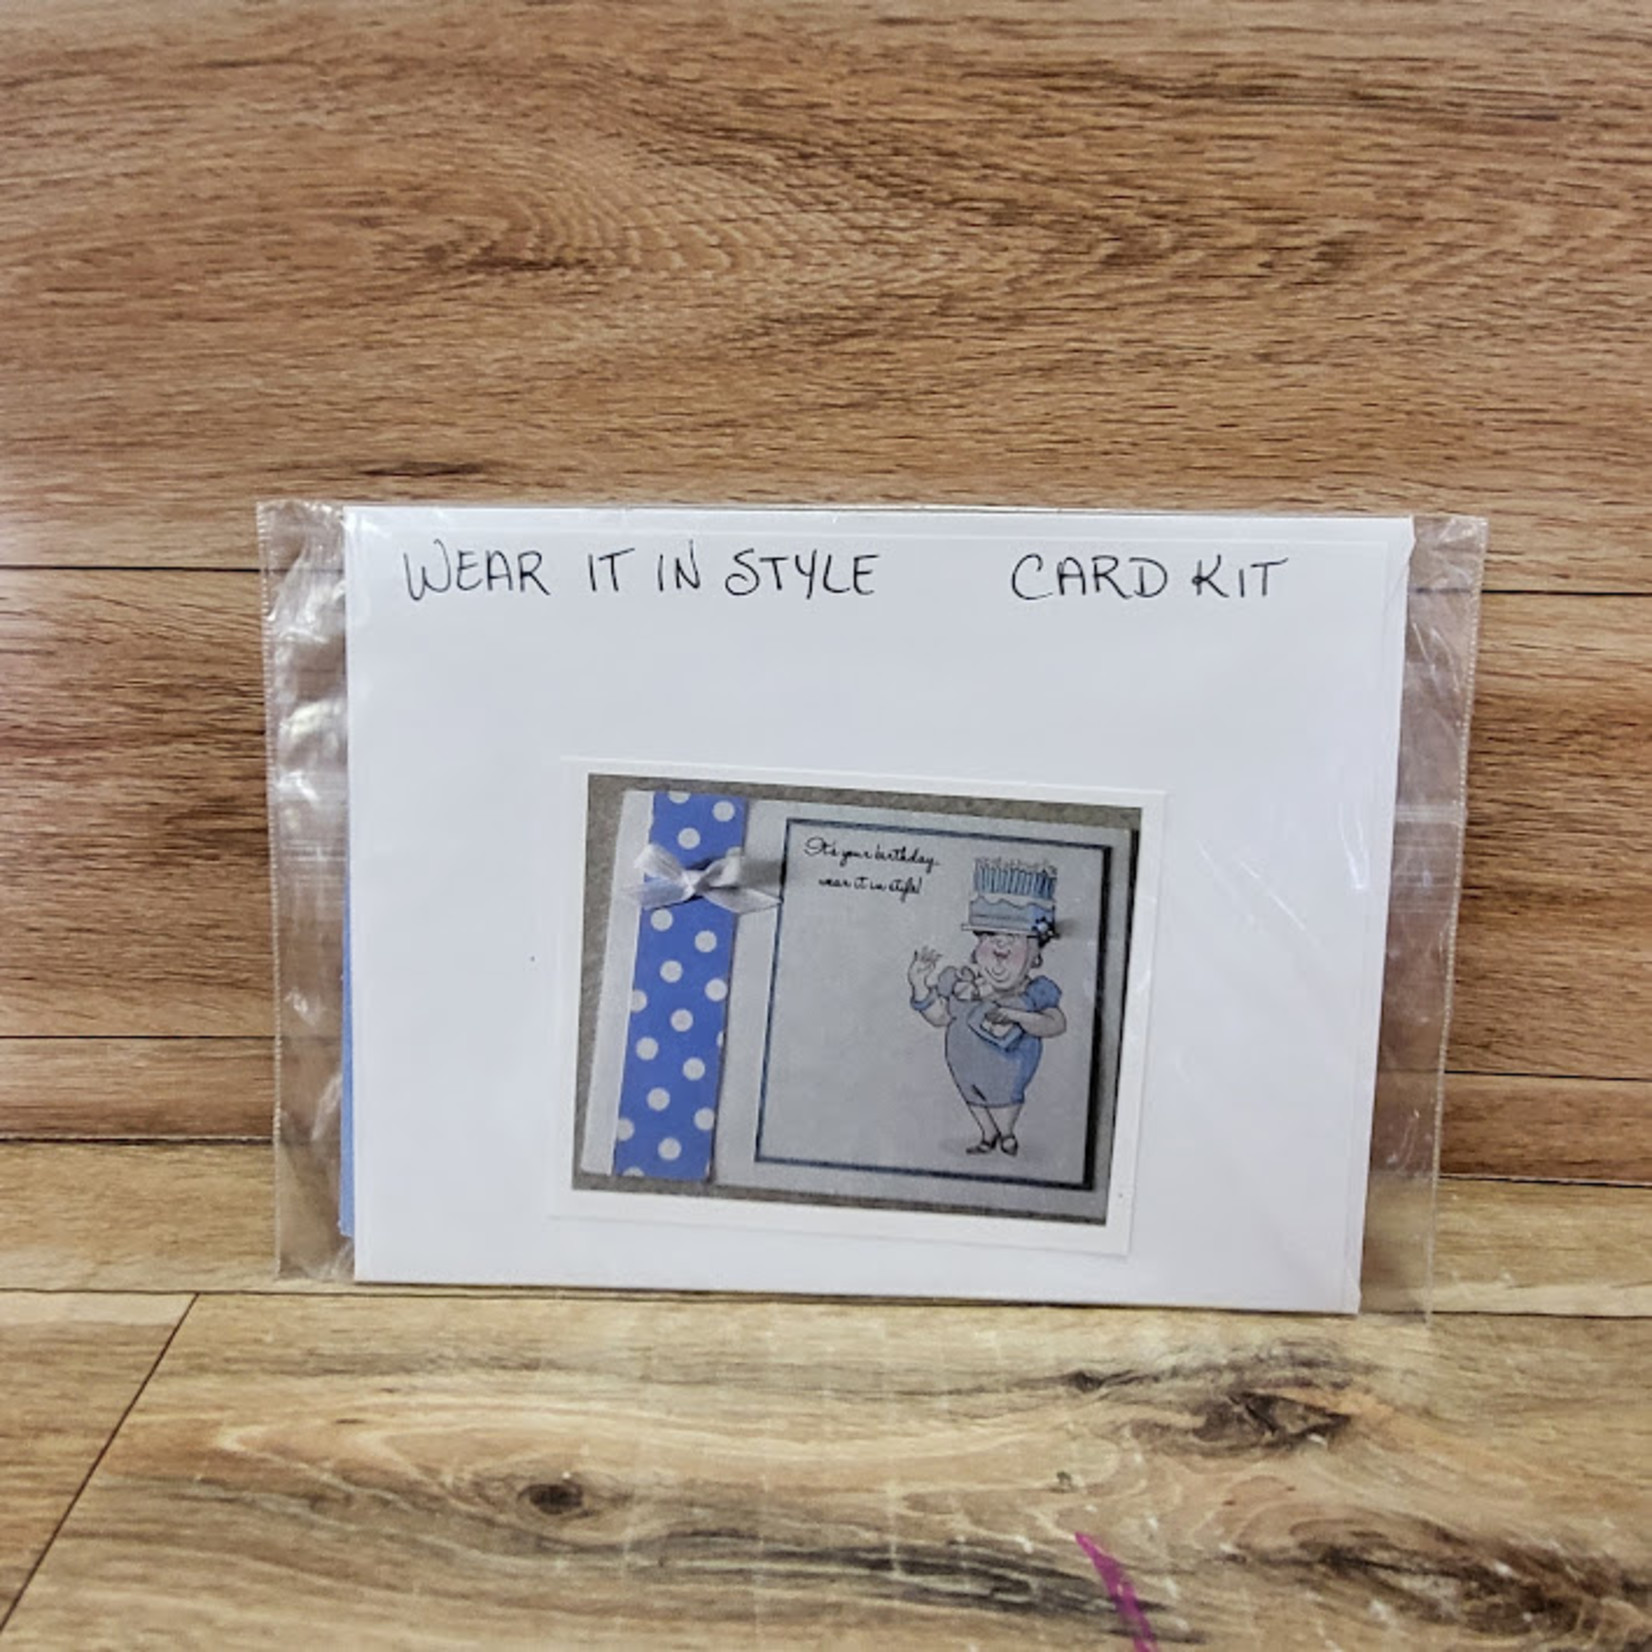 Card Kit - Wear it in Style